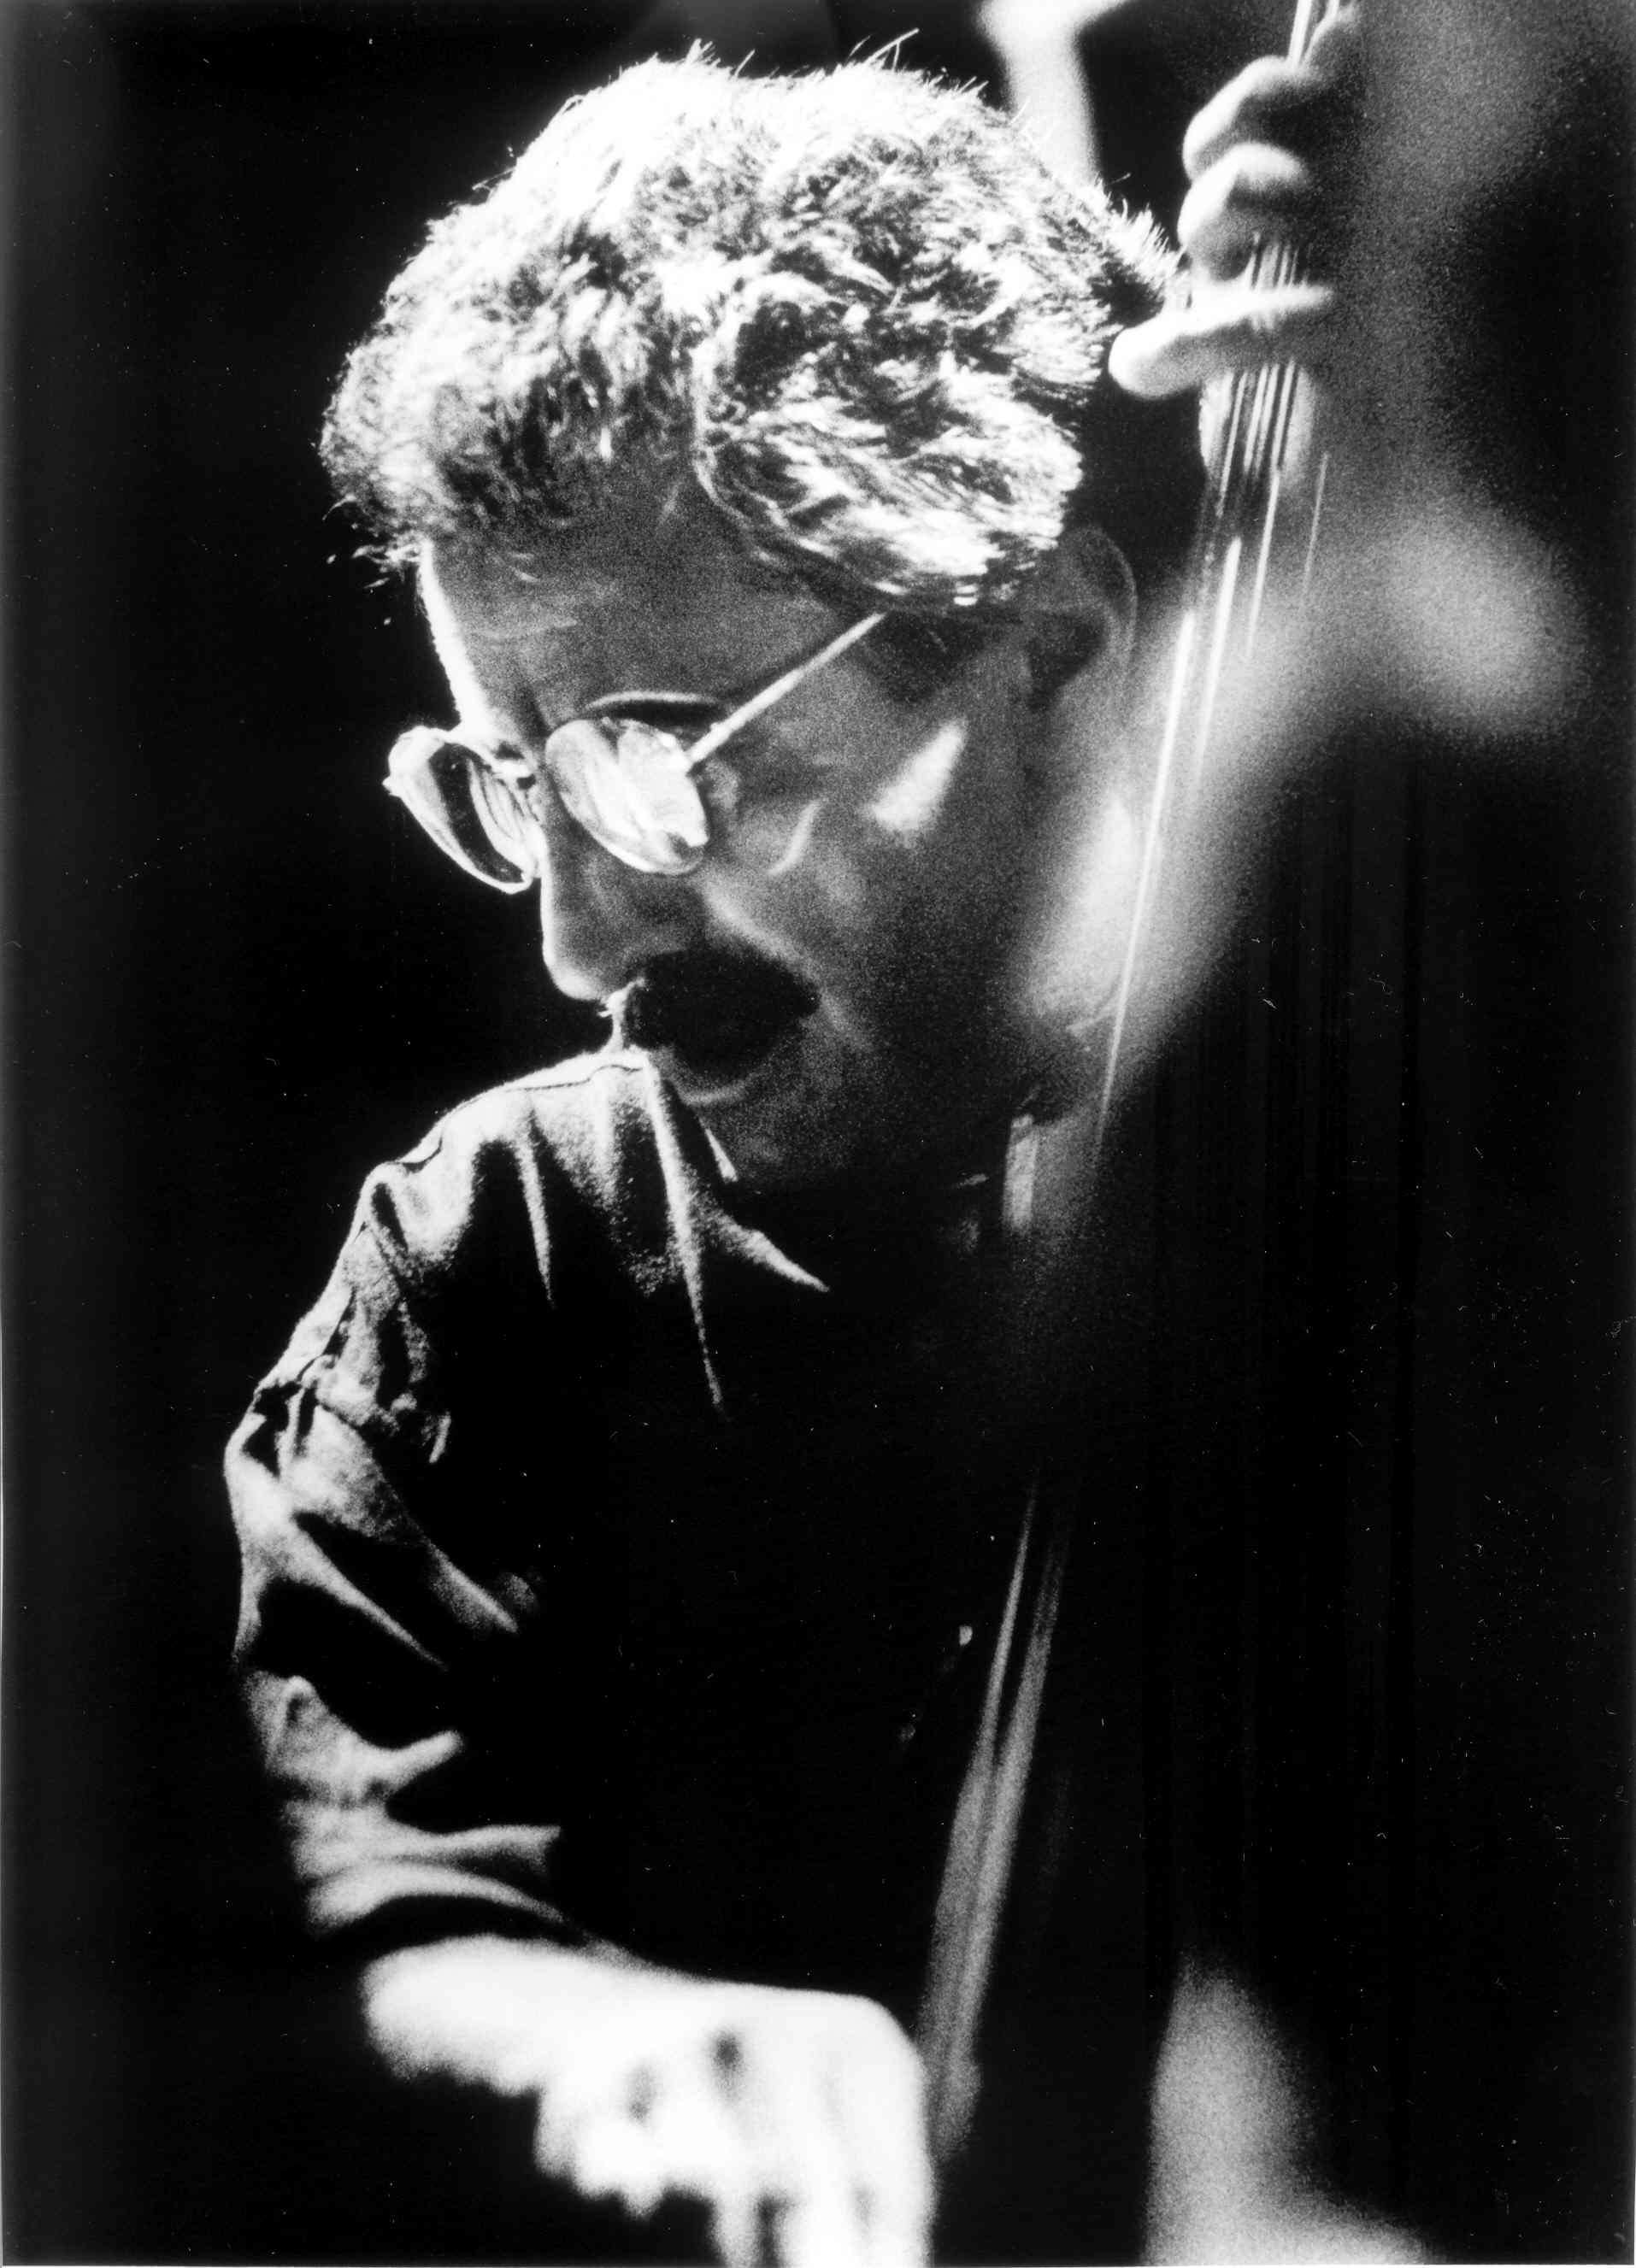 Mario Pavone Quintet O contrabaixista norte-americano Mario Pavone (n. 1940) iniciou a sua carreira nos anos 60. Estudou e tocou com grandes mestres, como Bertram Turetzky e Paul Bley (1968-72).